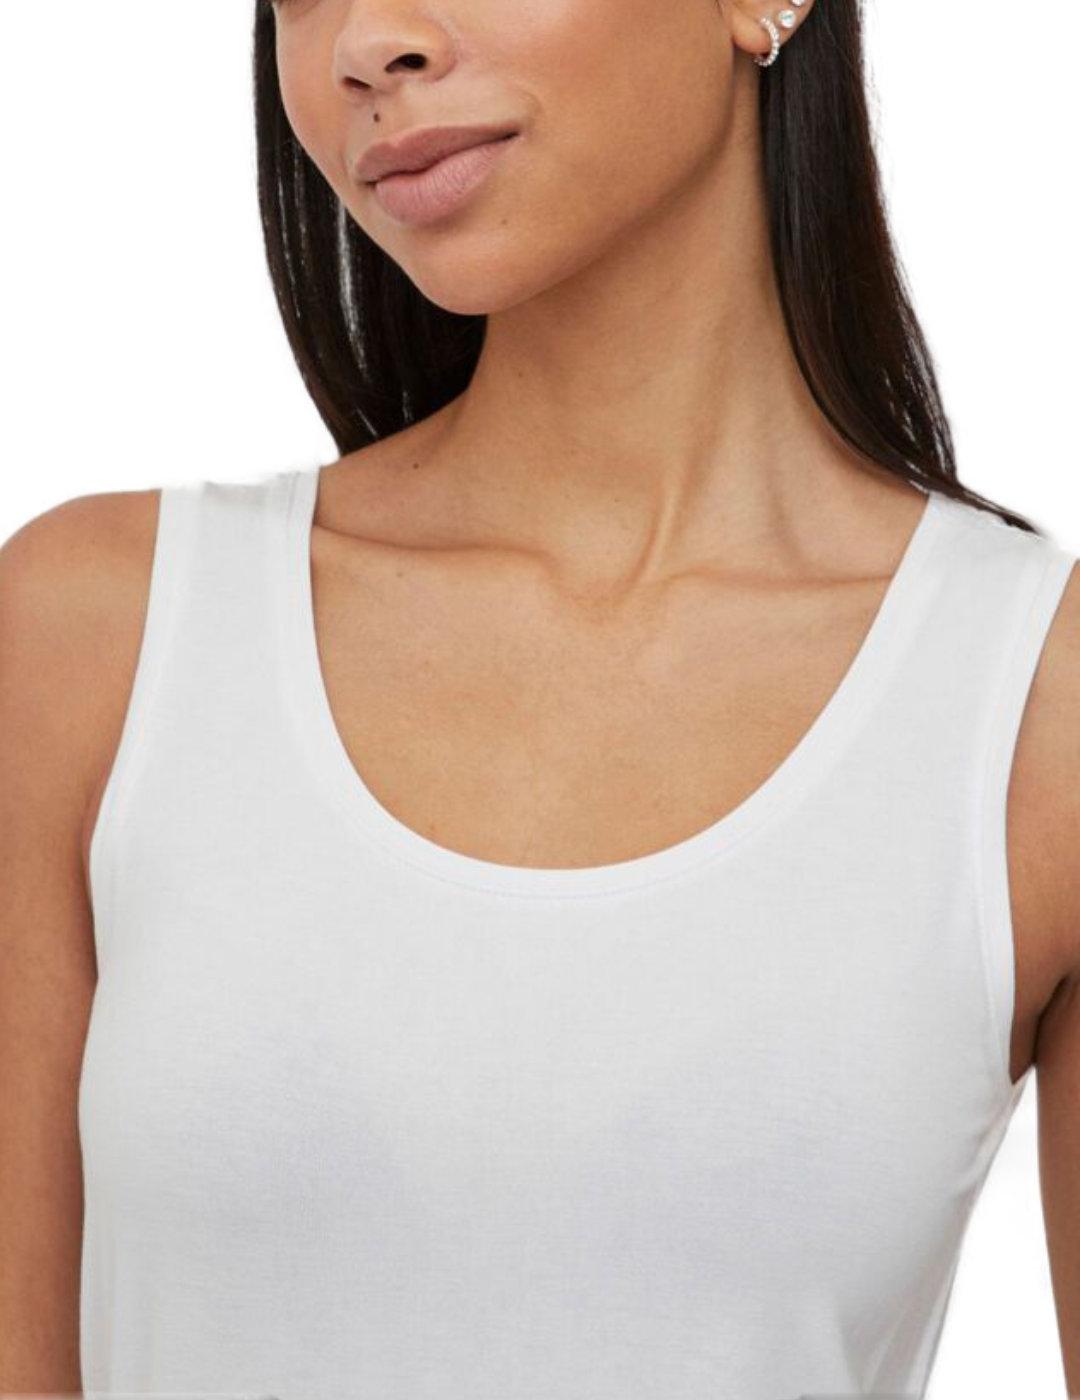 Camiseta Vila Daisy blanca tirantes para mujer-c